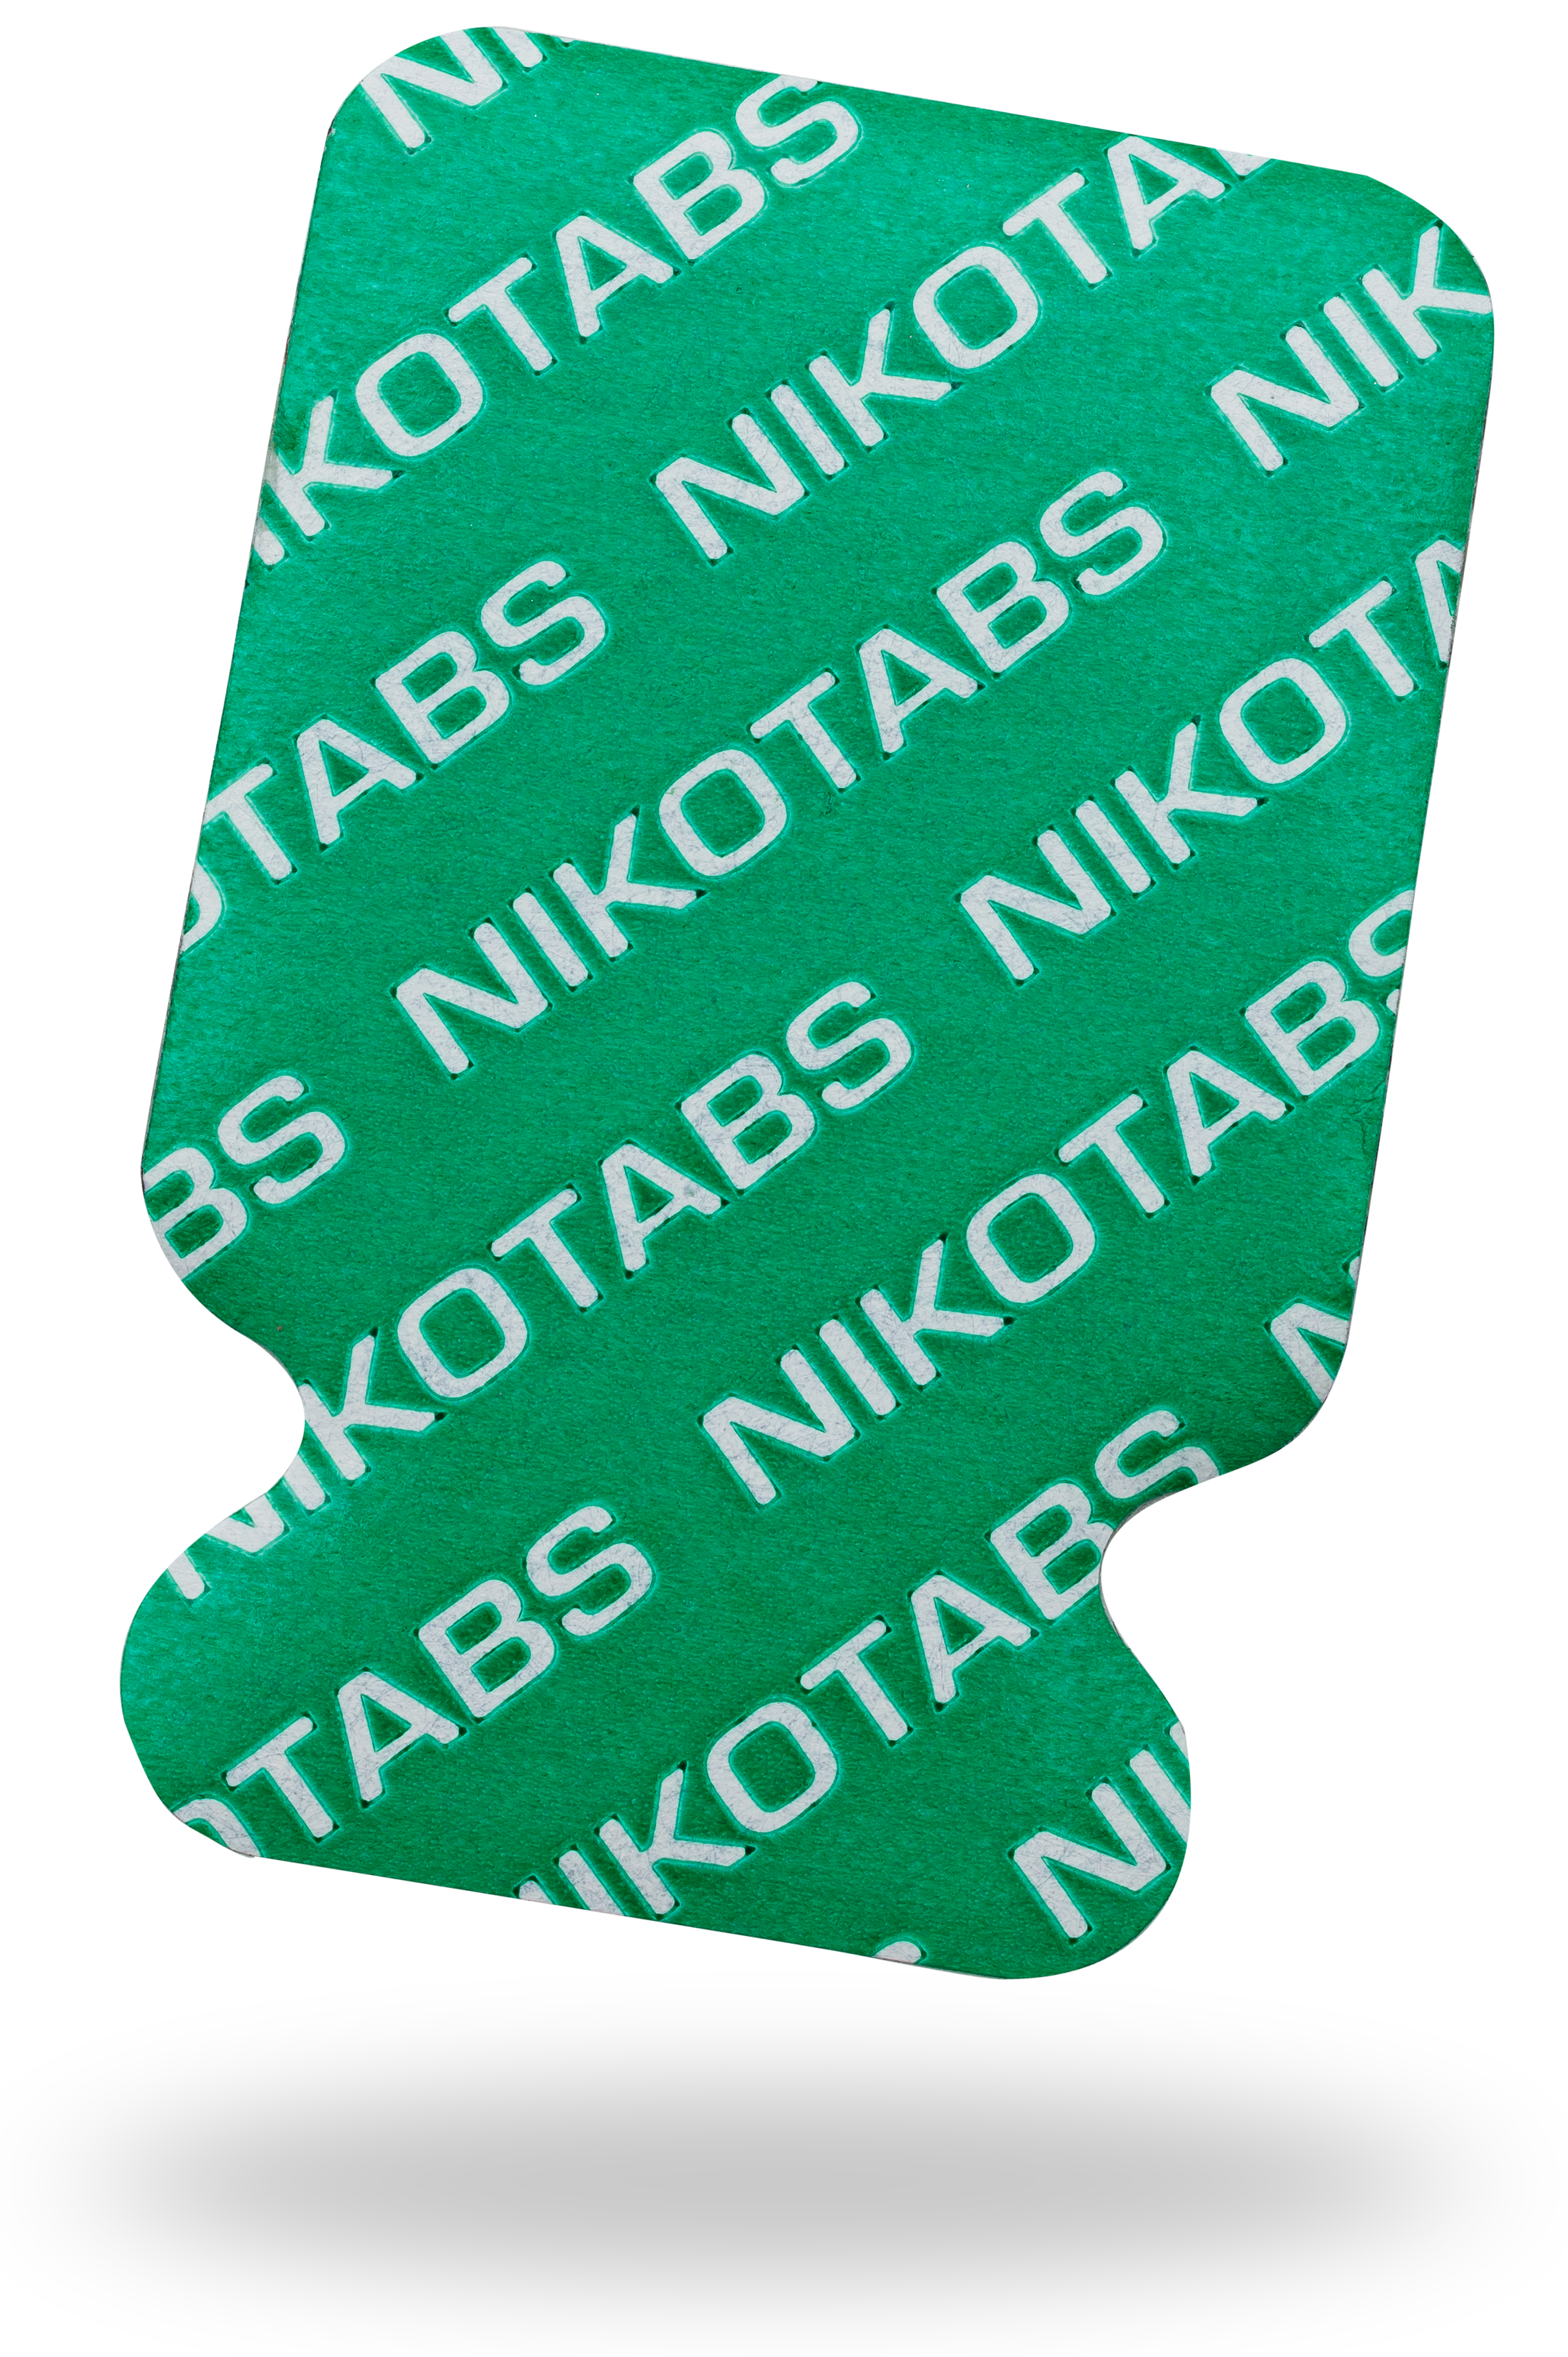 Nikotab No. 0515